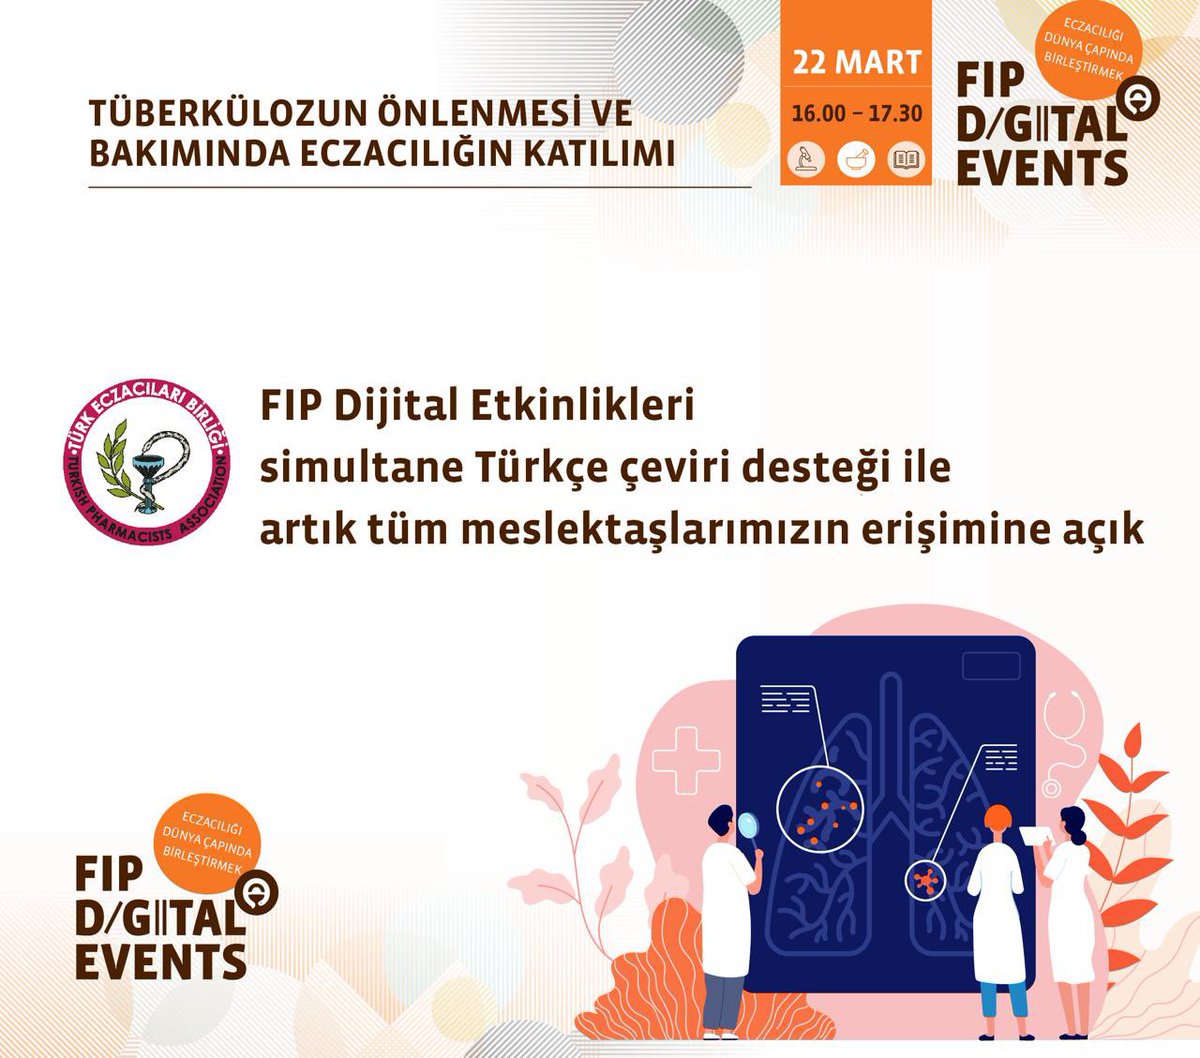 Uluslararası Eczacılık Federasyonu ve Türk Eczacıları Birliği işbirliğiyle; simultane Türkçe çeviri desteği ile tüm meslektaşlarımızın erişimine açılan 'Tüberkülozun Önlenmesi ve Bakımında Eczacılığın Katılımı” başlıklı etkinliğe bit.ly/4apo7Qu linki üzerinden kayıt…